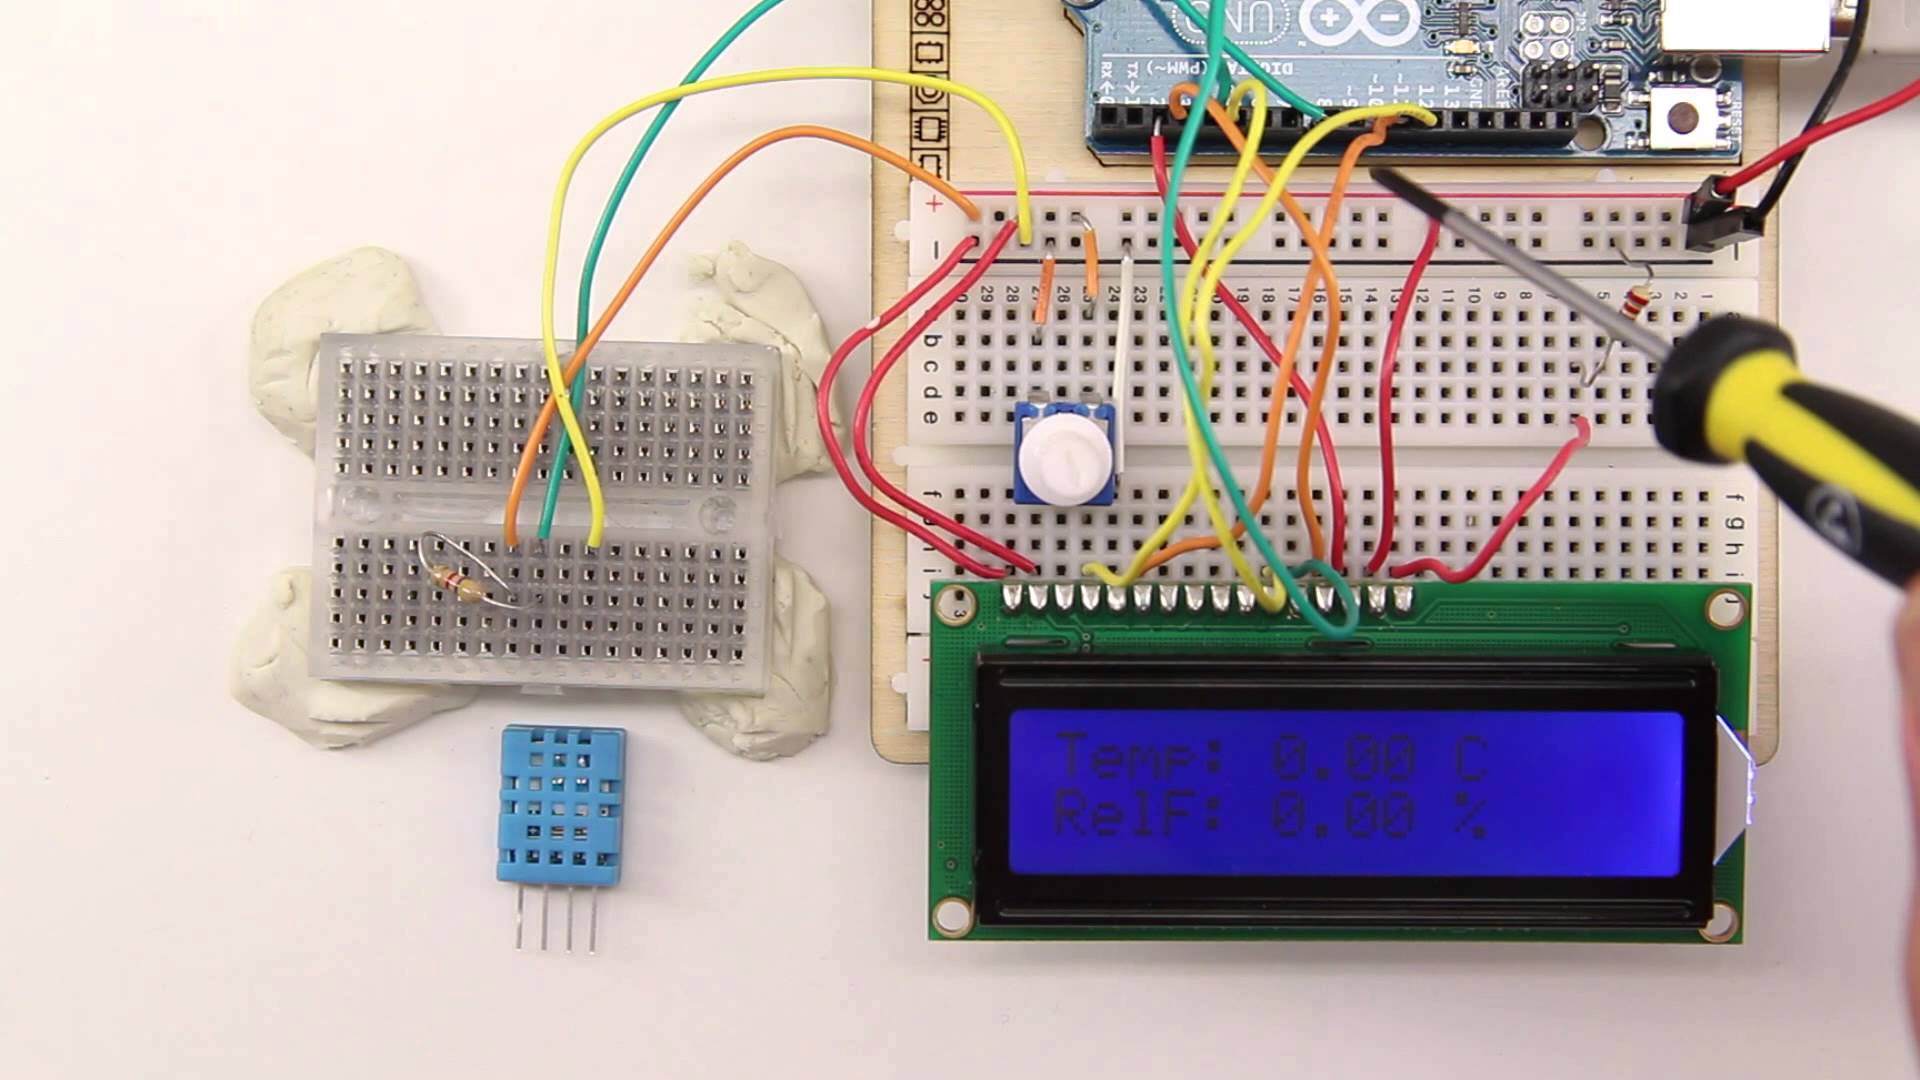 DHT11 Sensor für Temperatur und Luftfeuchtigkeit am Arduino